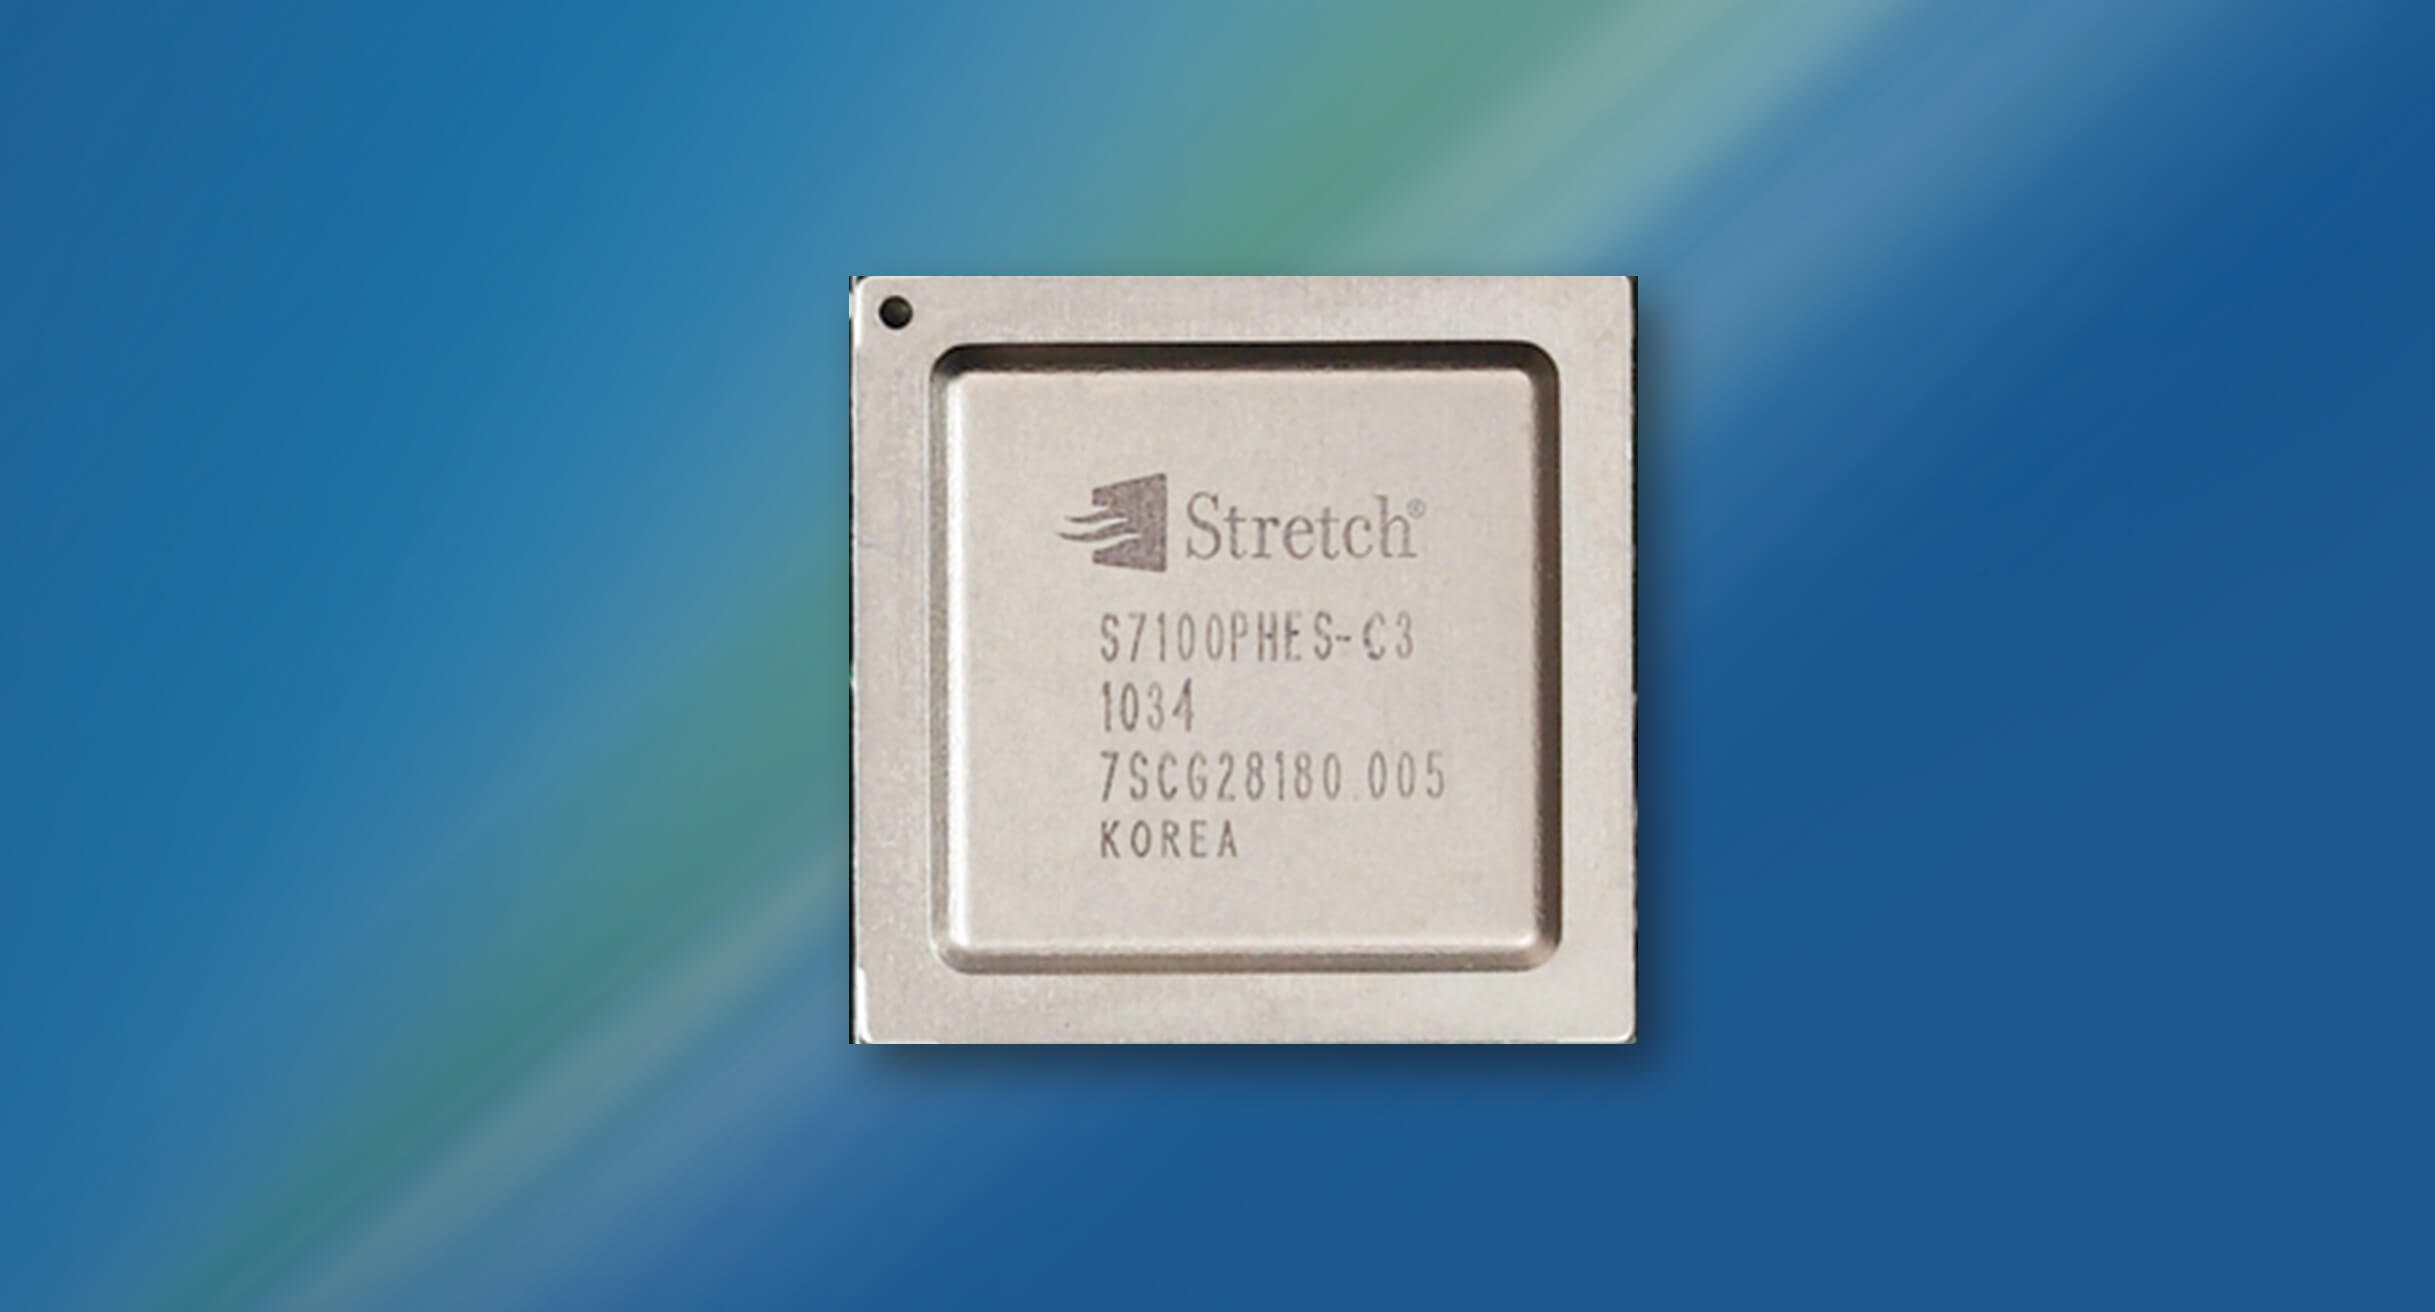 Stretch Processors